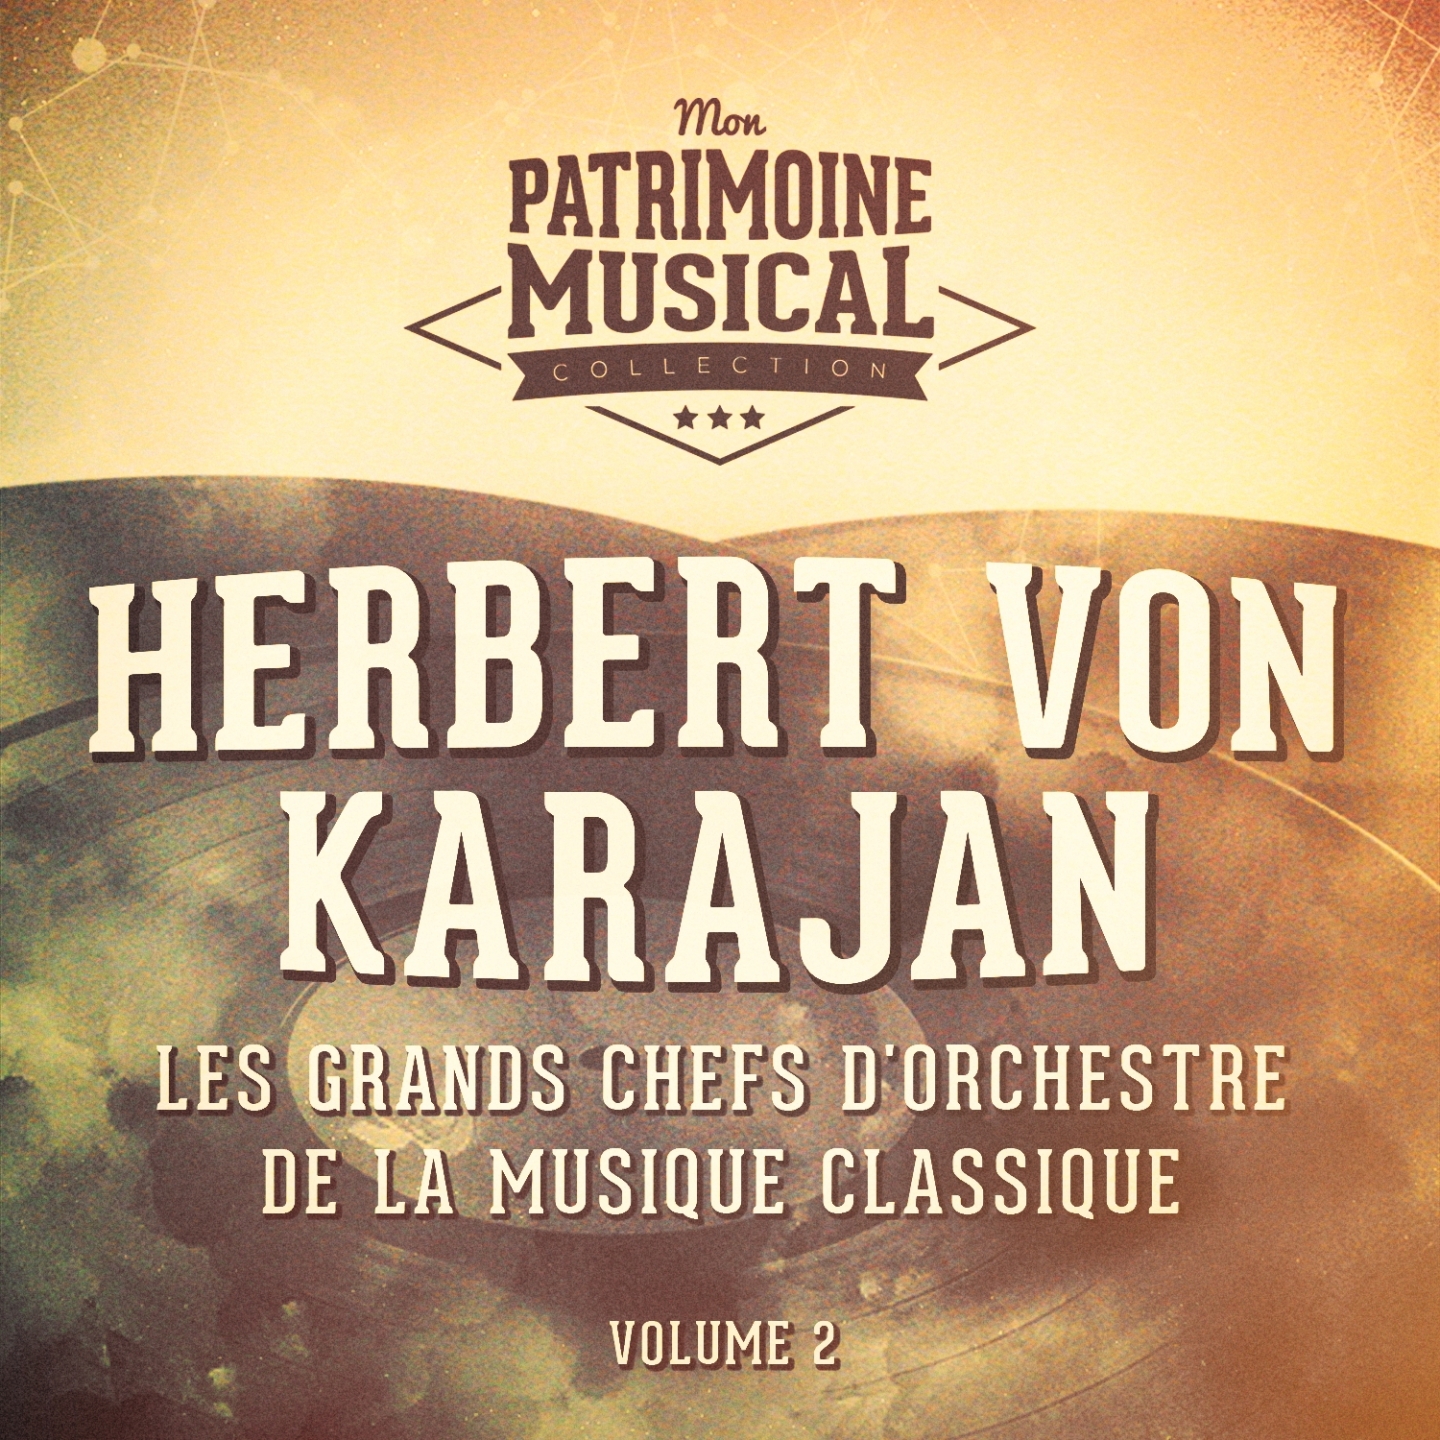 Les grands chefs d'orchestre de la musique classique : Herbert von Karajan, Vol. 2 (« Carmen »)